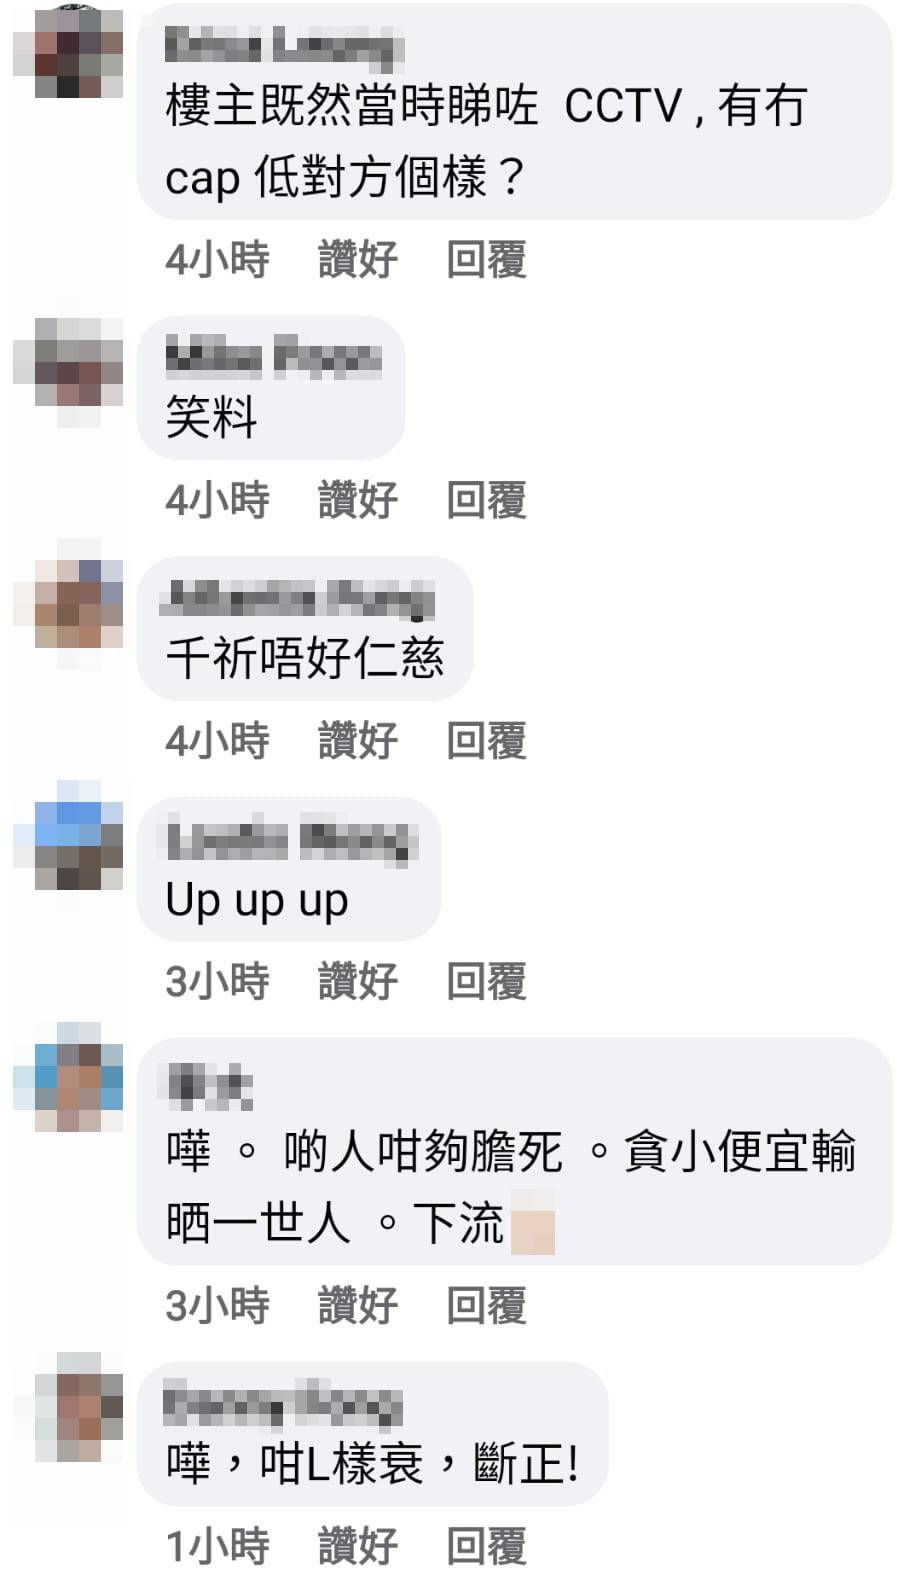 网民提议事主在香港也要报警，「千祈唔好仁慈」，这种人要受惩罚。